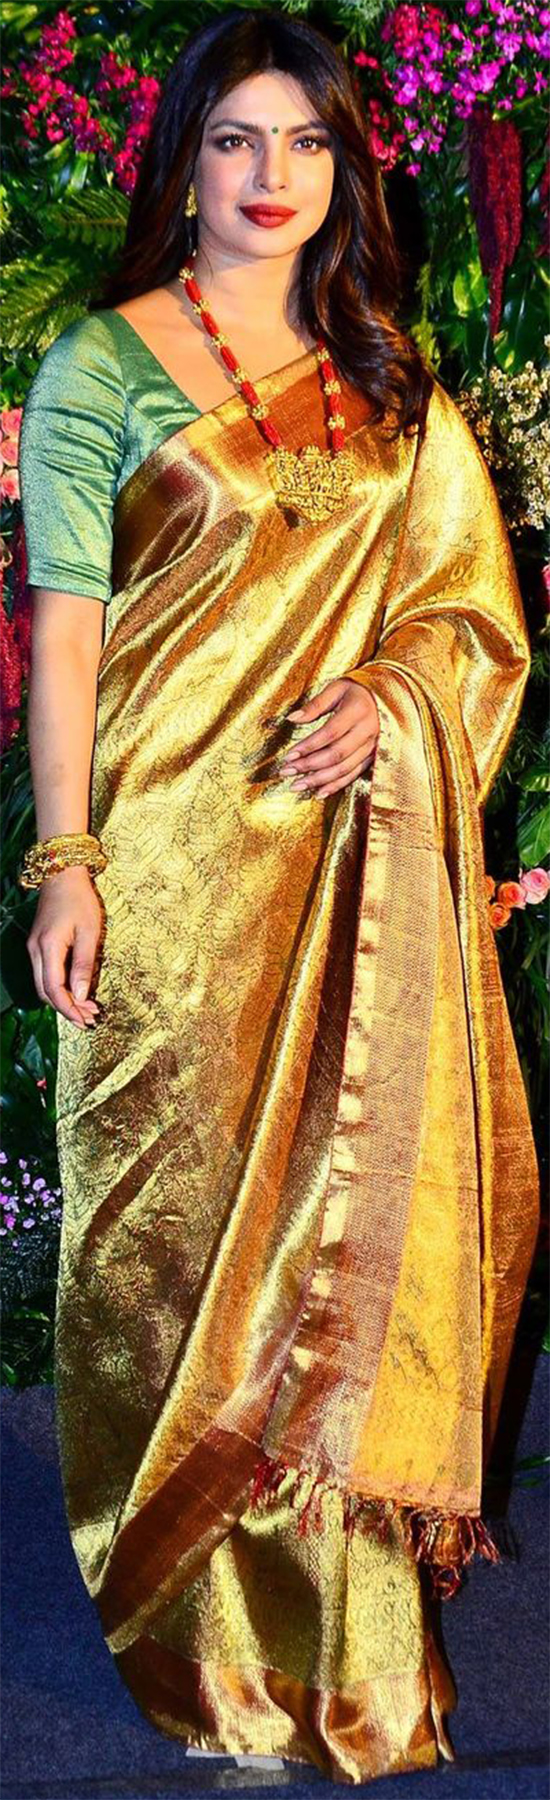 Priyanka Chopra In Golden Colour Saree